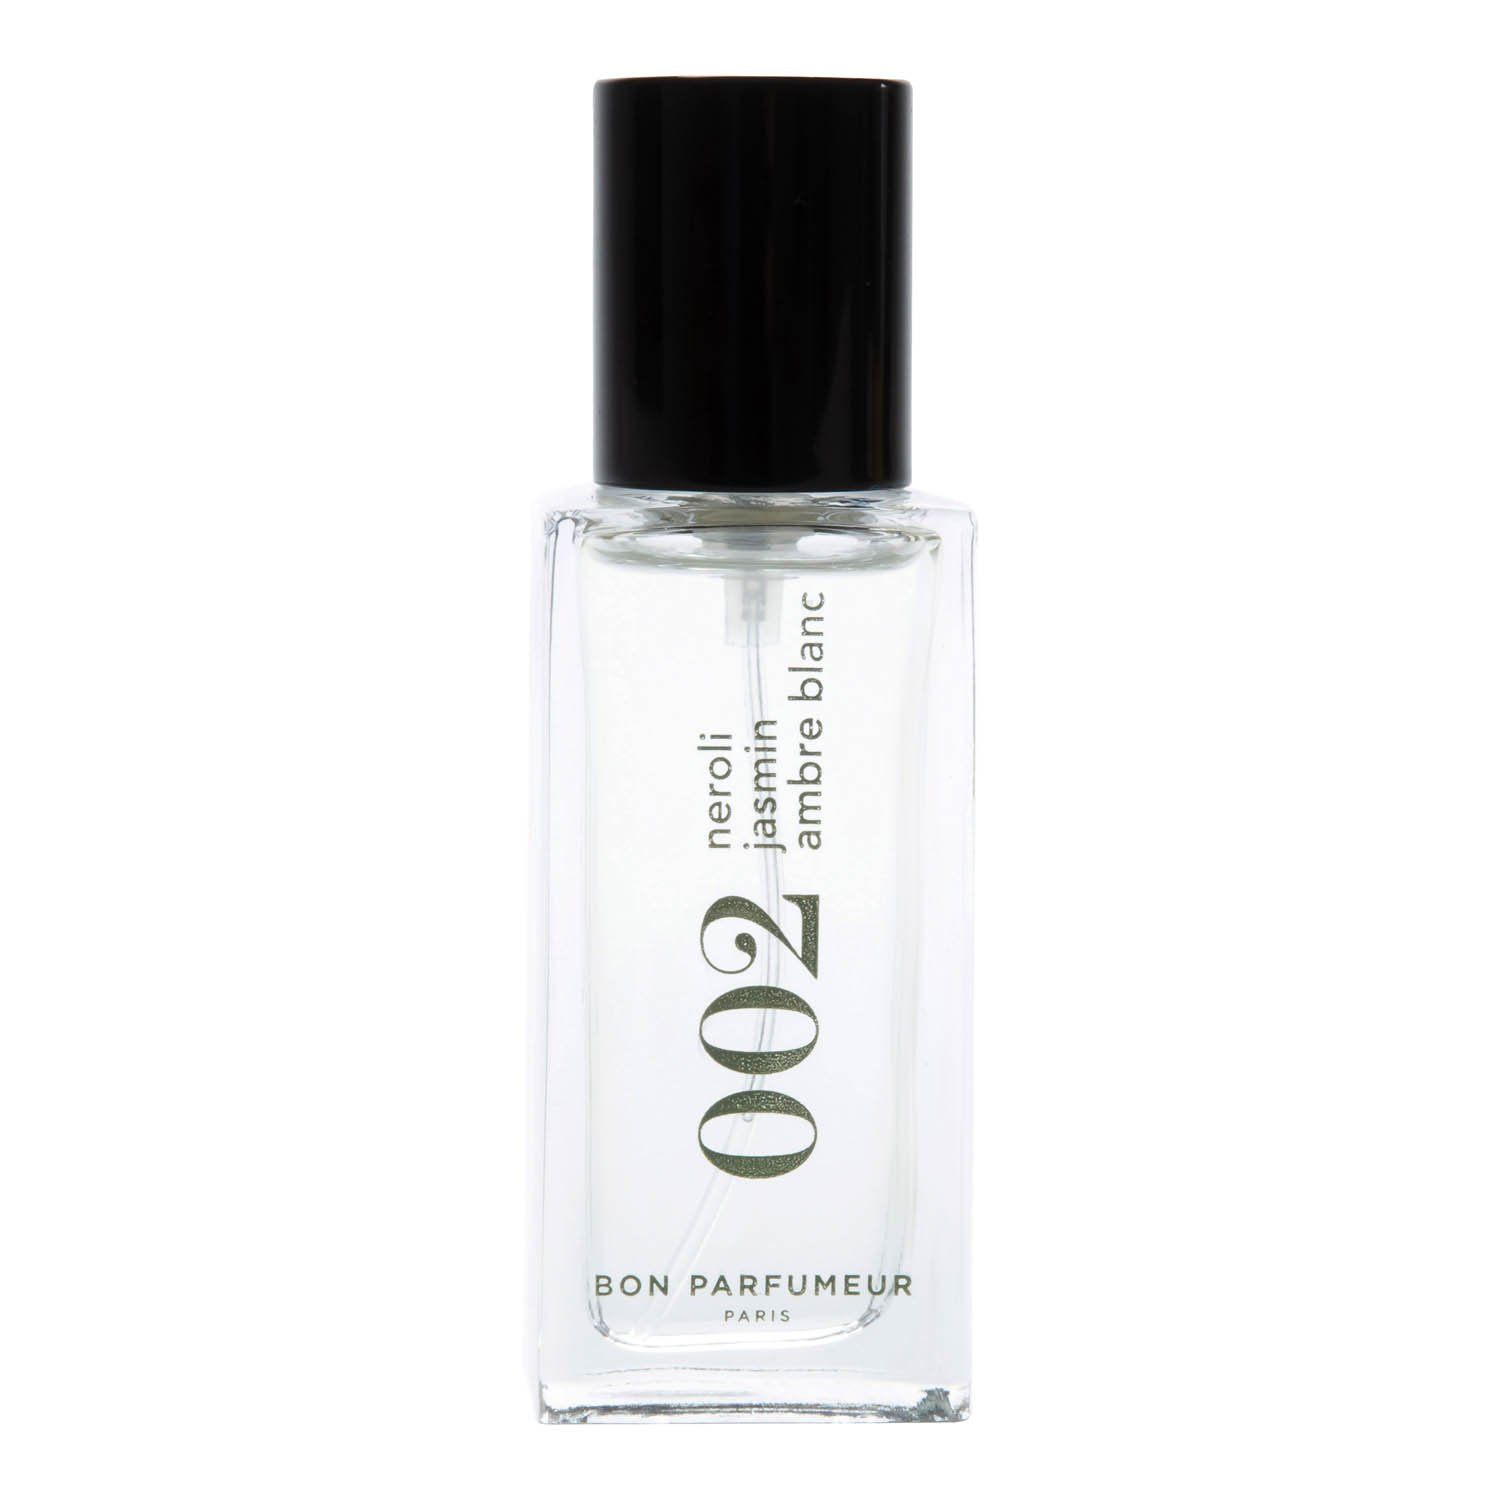 Bon Parfumeur Cologne 002 15 ml